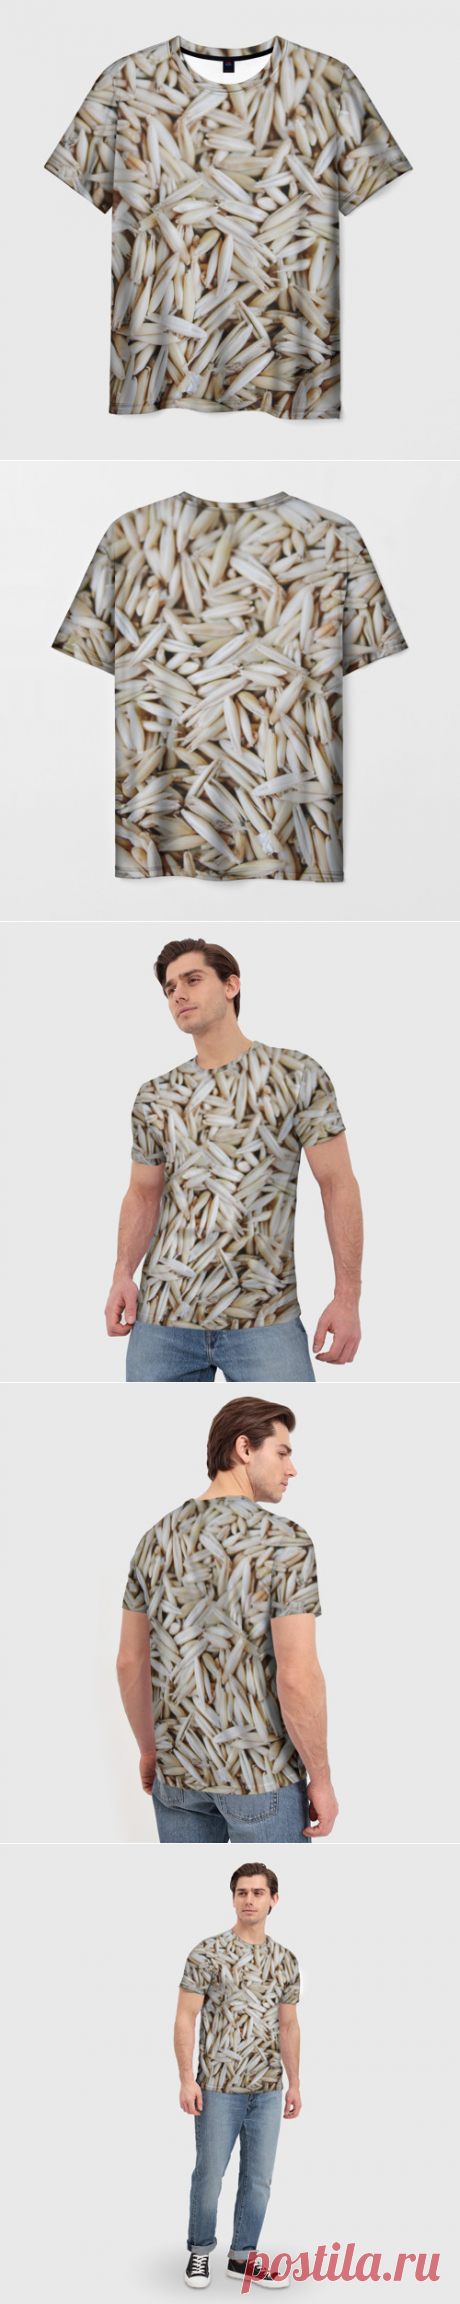 Мужская футболка 3D Зёрна овса - купить по цене 1330 руб в интернет-магазине Всемайки, арт 3651227